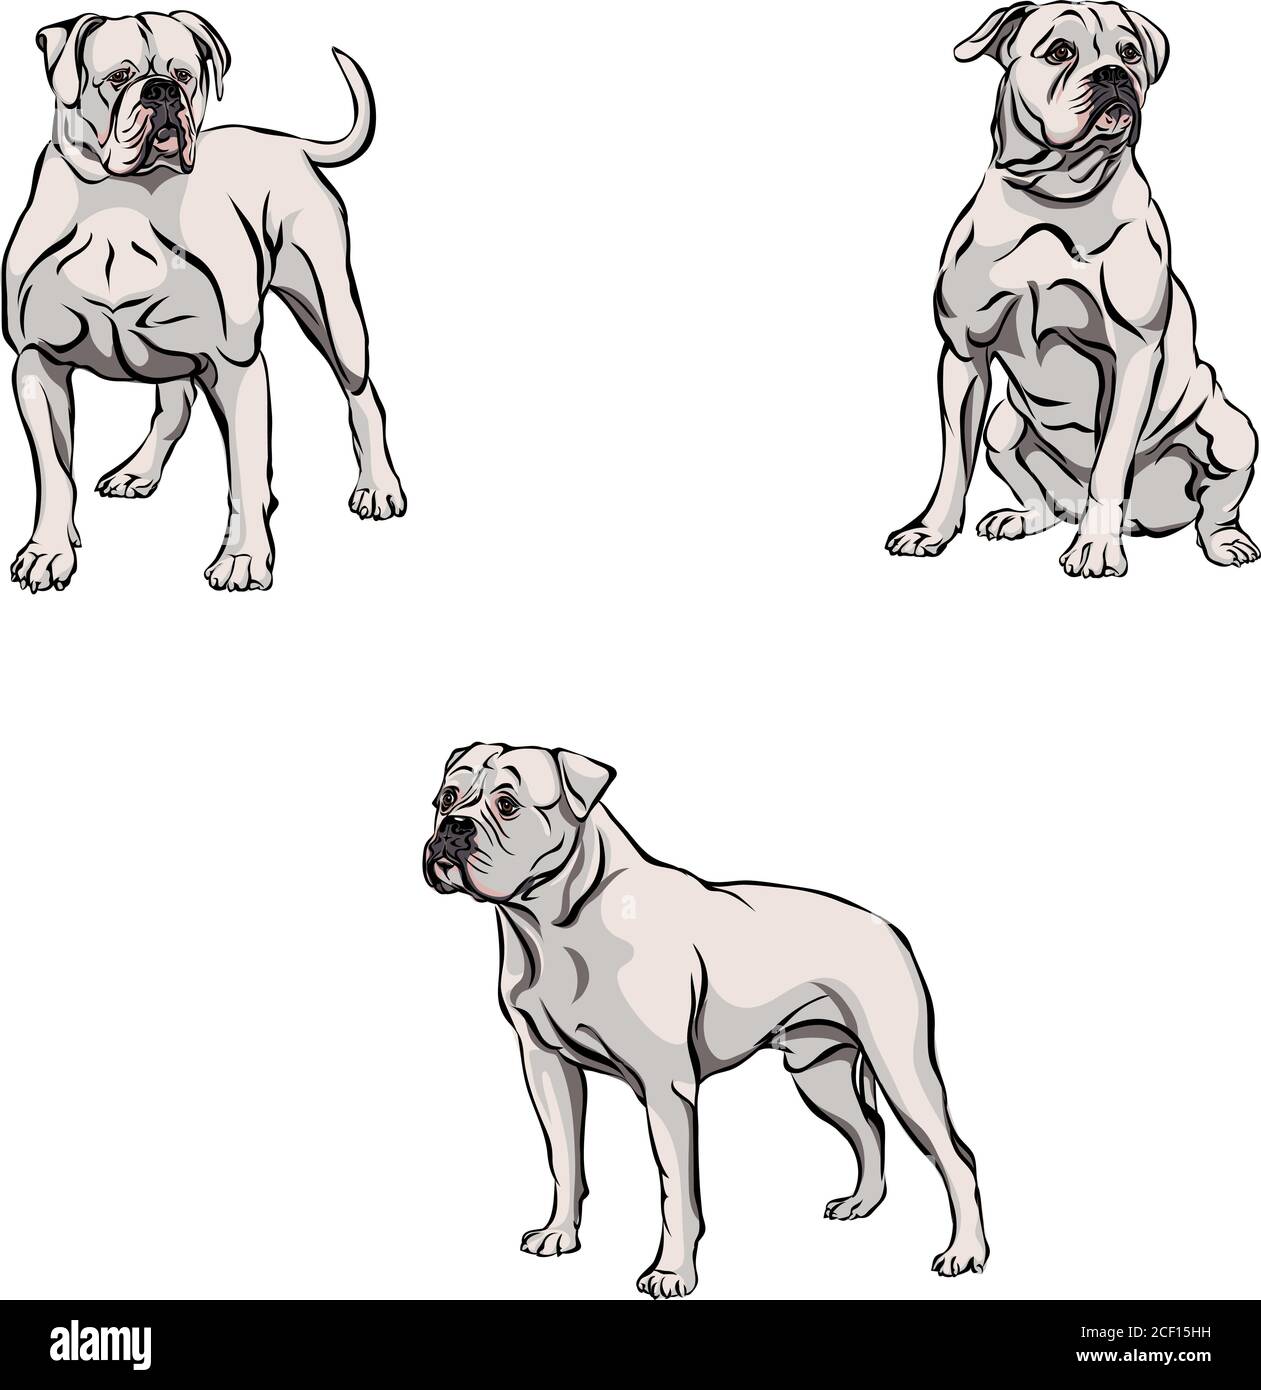 Cane, bulldog in movimento, pose diverse, nero, colore, pose varie, movimenti e angoli di figure, nero, silhouette, set, vettore, illustrazione Illustrazione Vettoriale